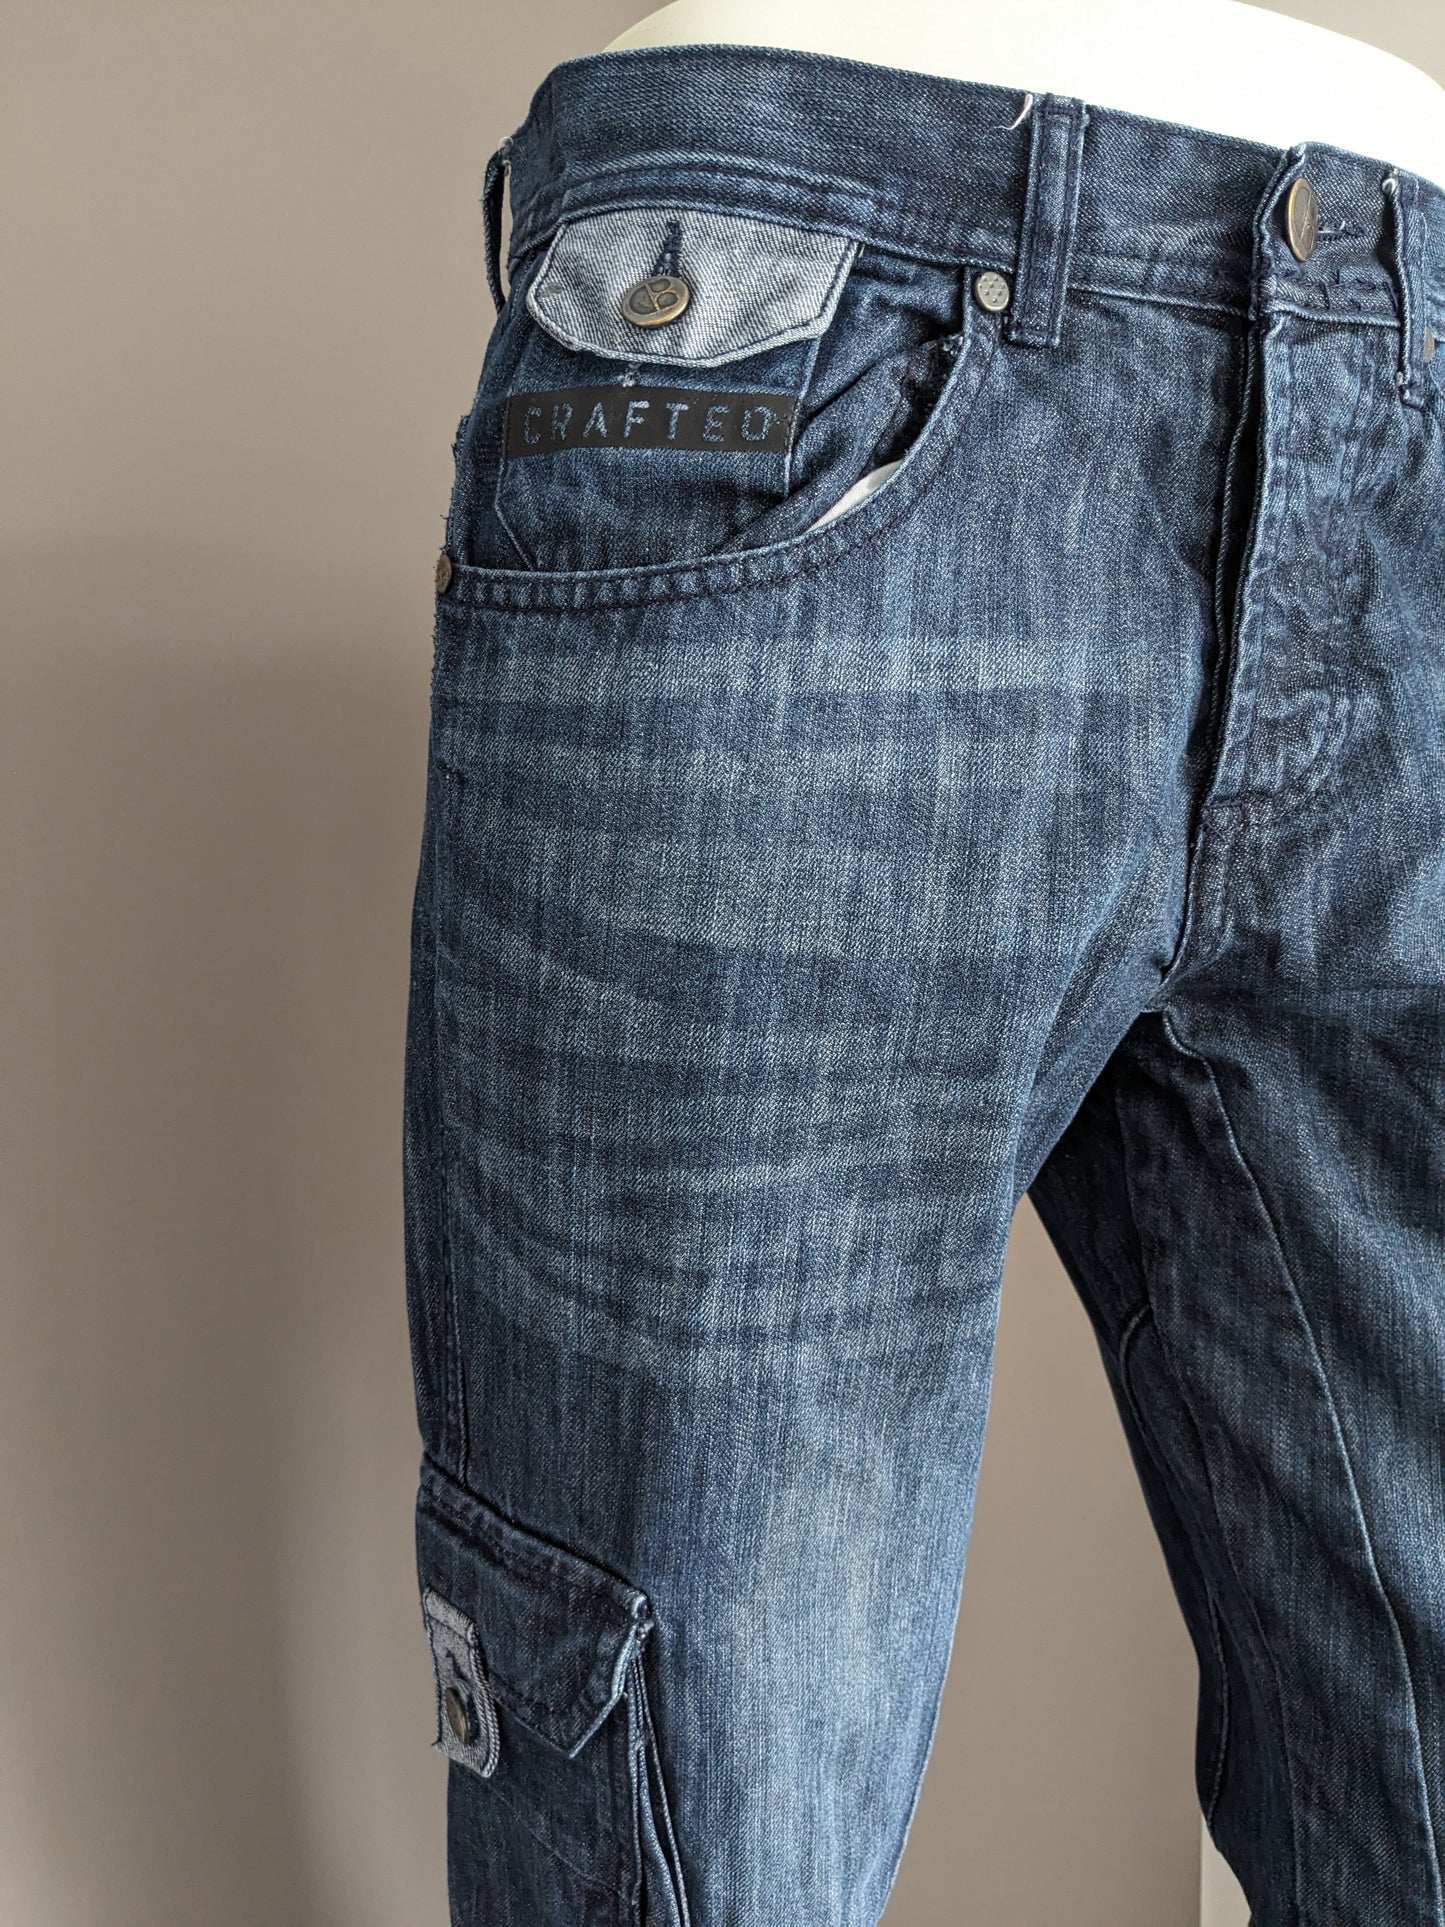 Jeans fabriqués. Couleur bleu foncé. Taille W32 - L34.